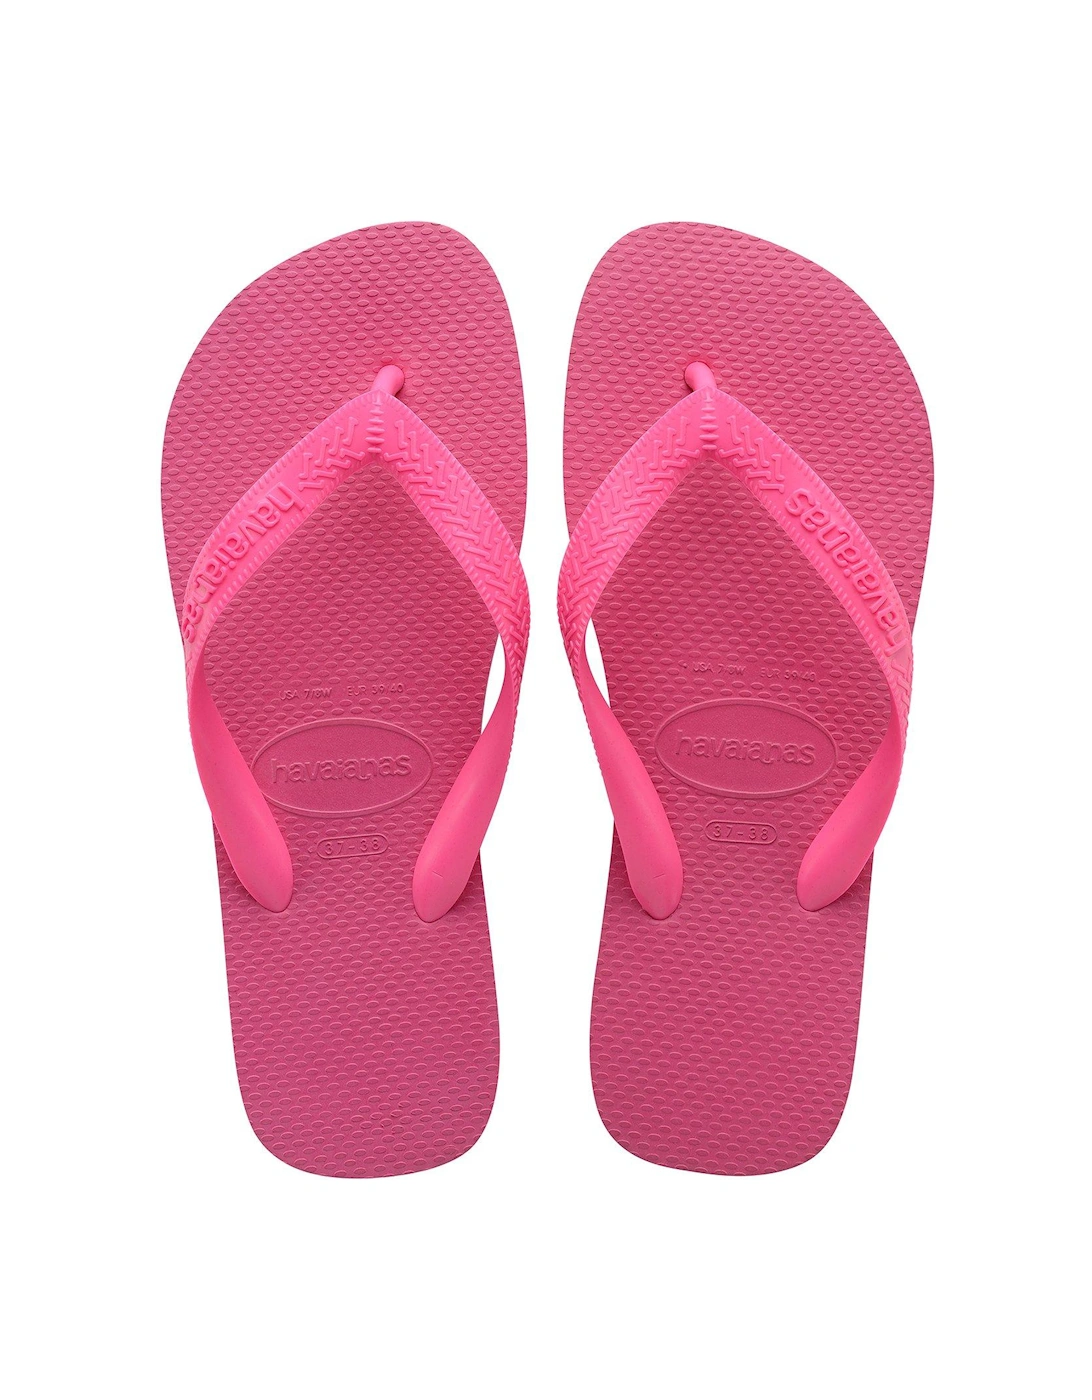 Top Flip Flops - Pink Flux, 2 of 1